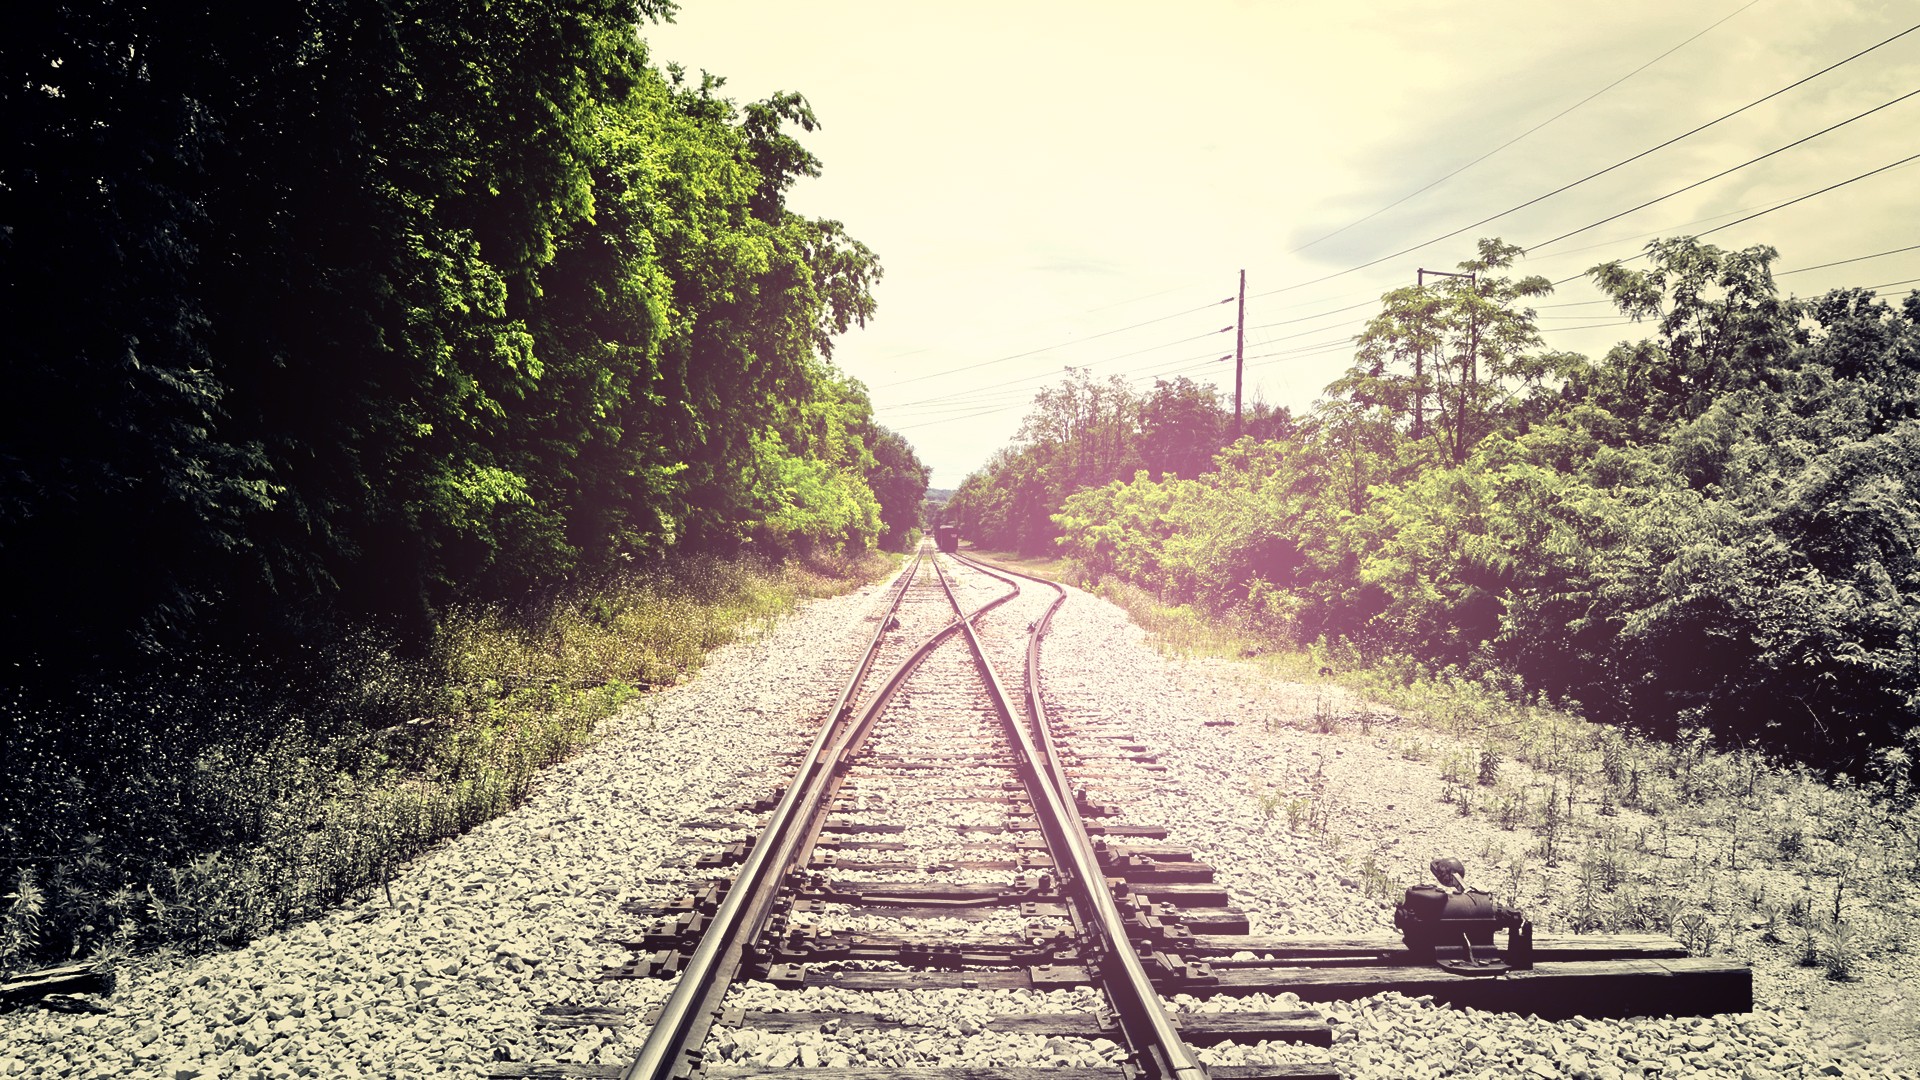 Fondos Vías de ferrocarril (Railroad Tracks) ADNFriki (5)